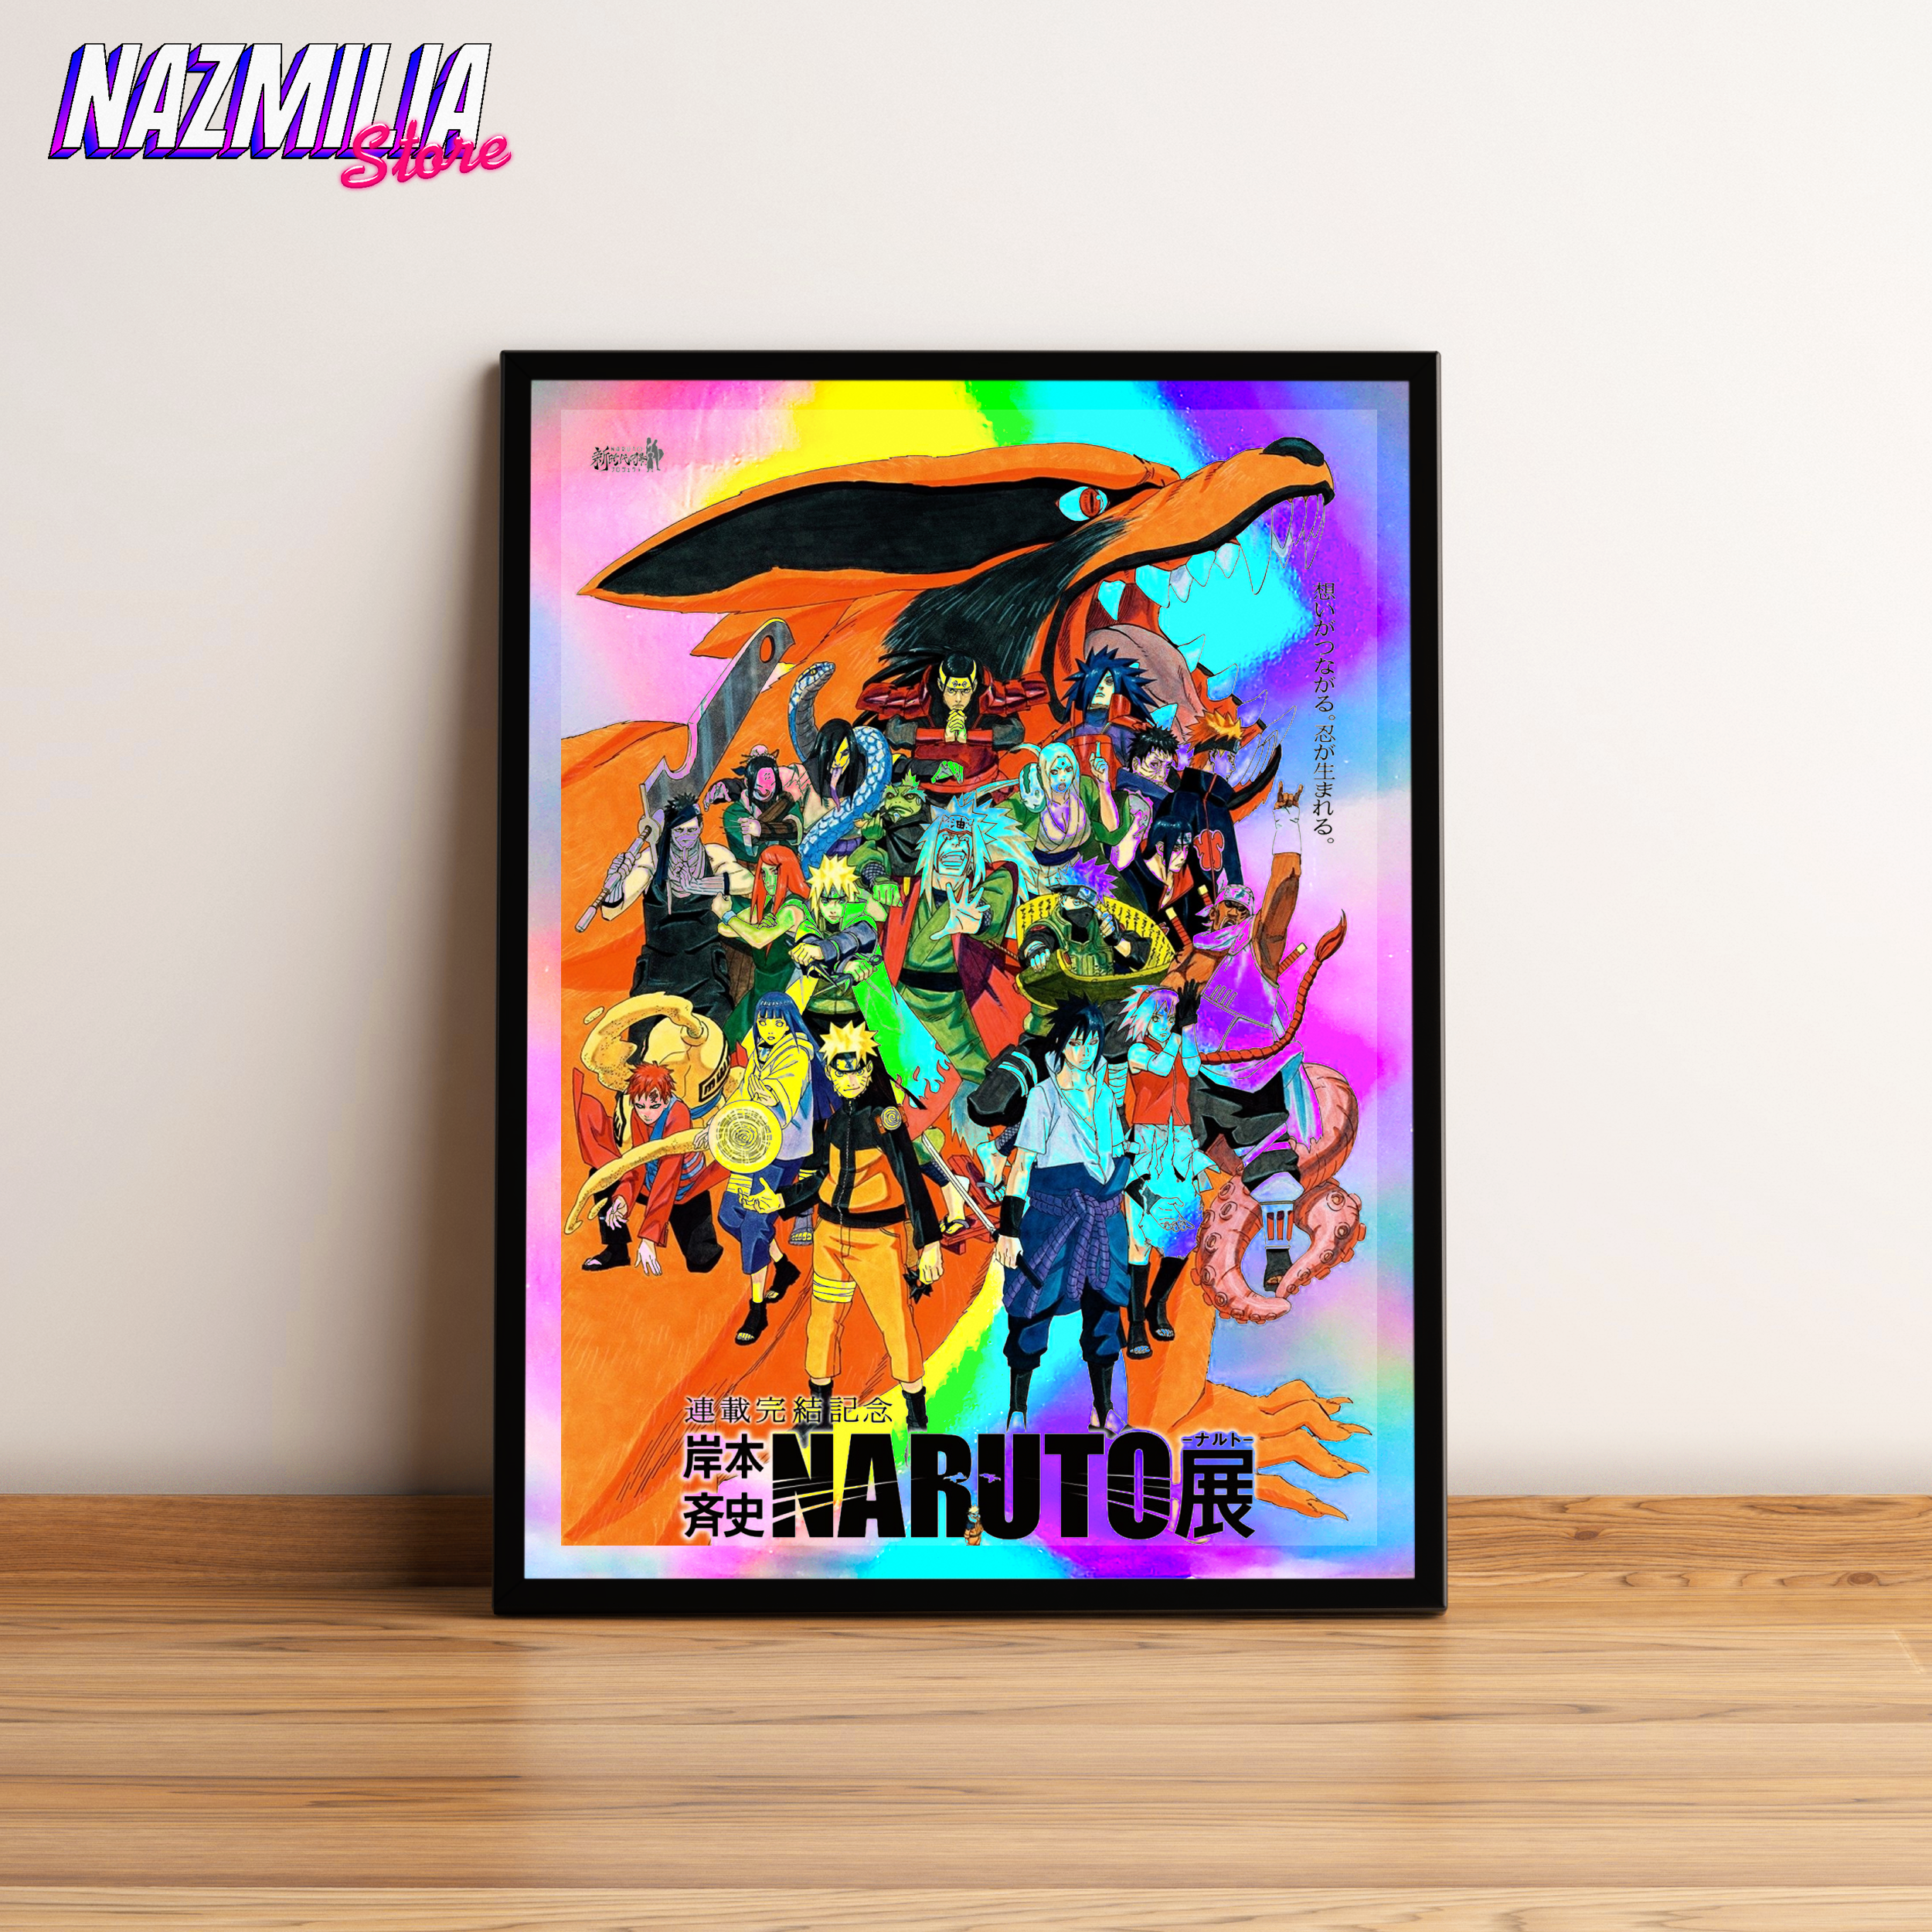 19 – Naruto zorro 9 colas